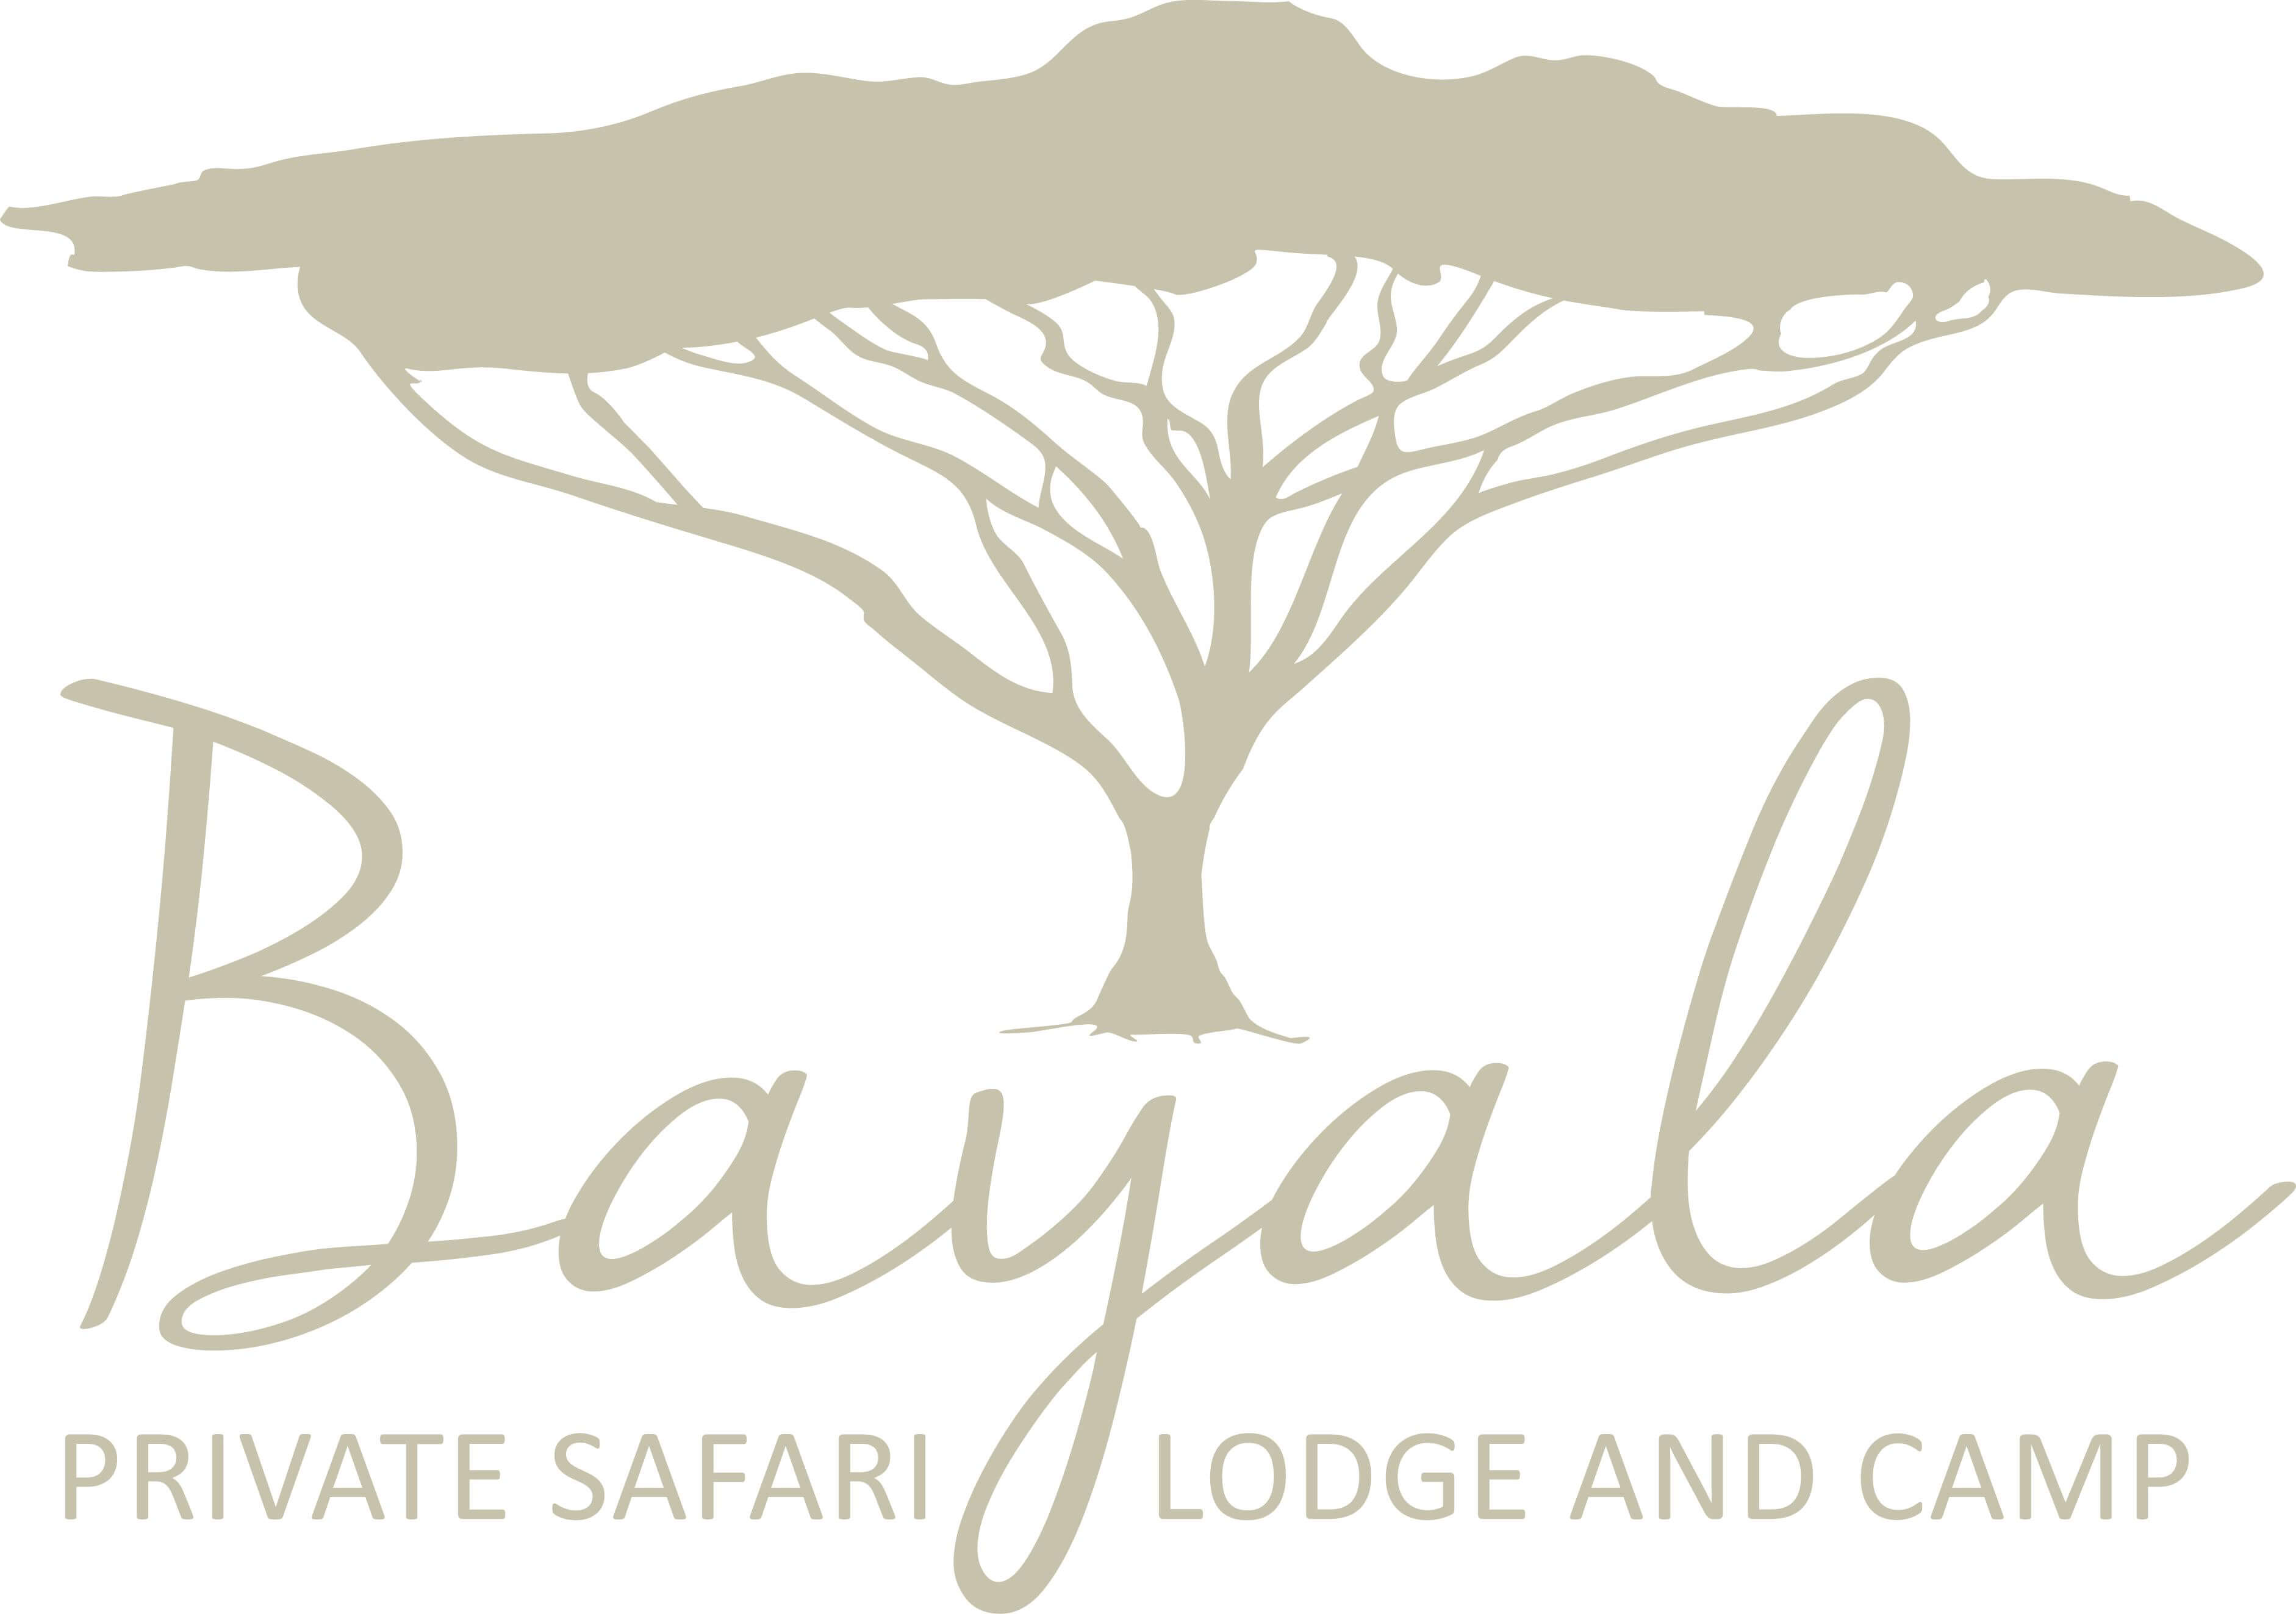 Bayala Safari Lodge and Camp